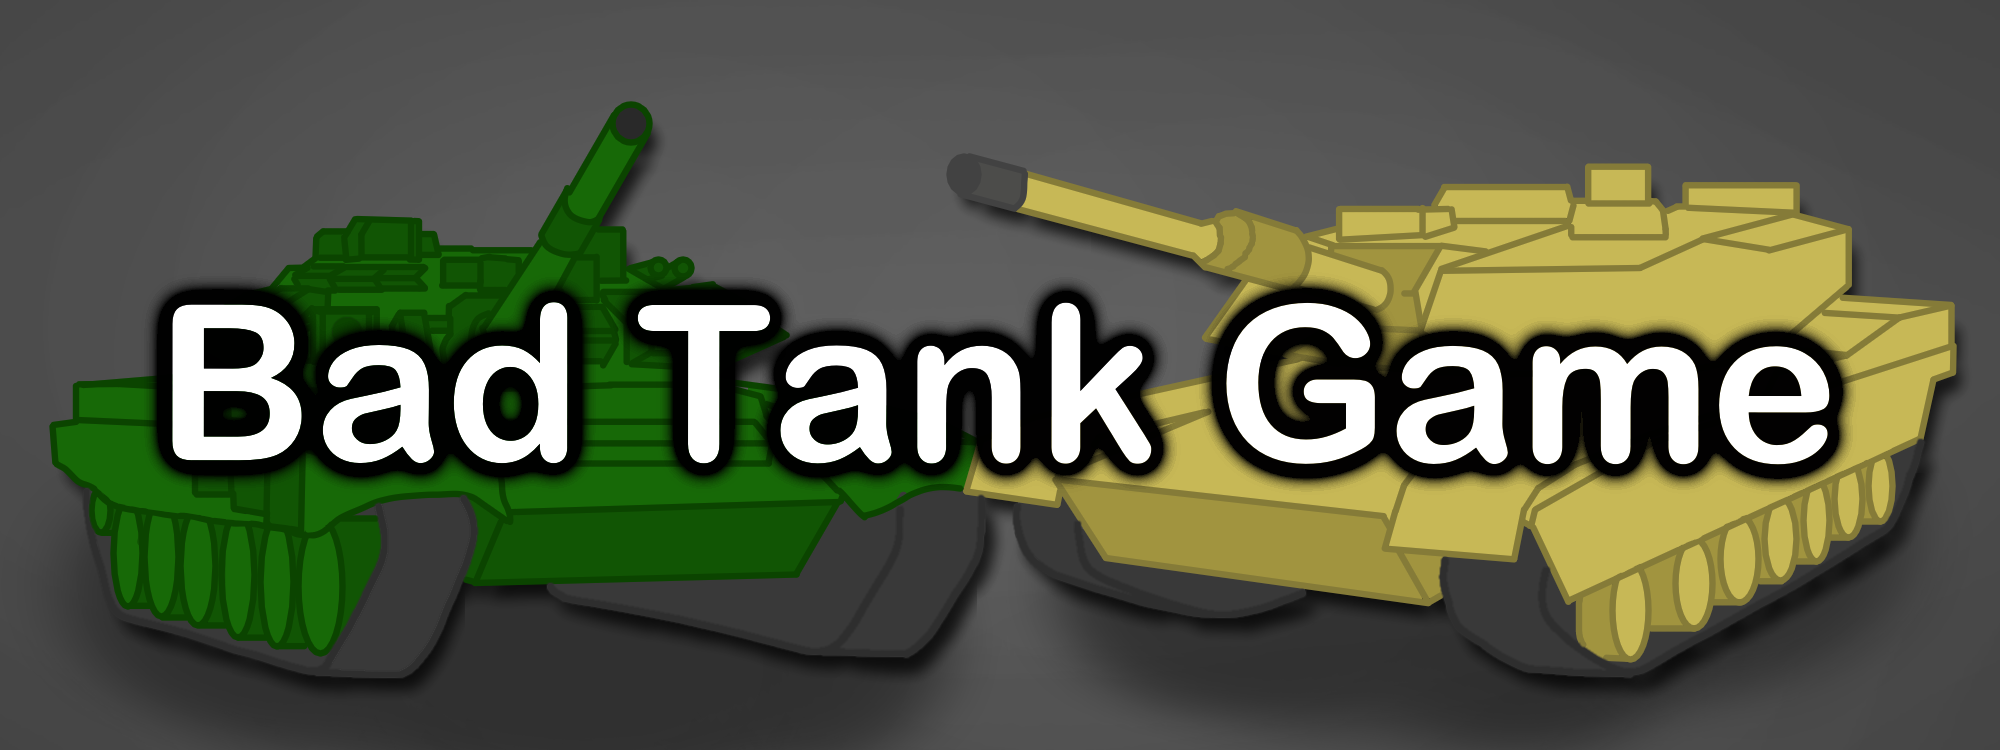 Bad Tank Game